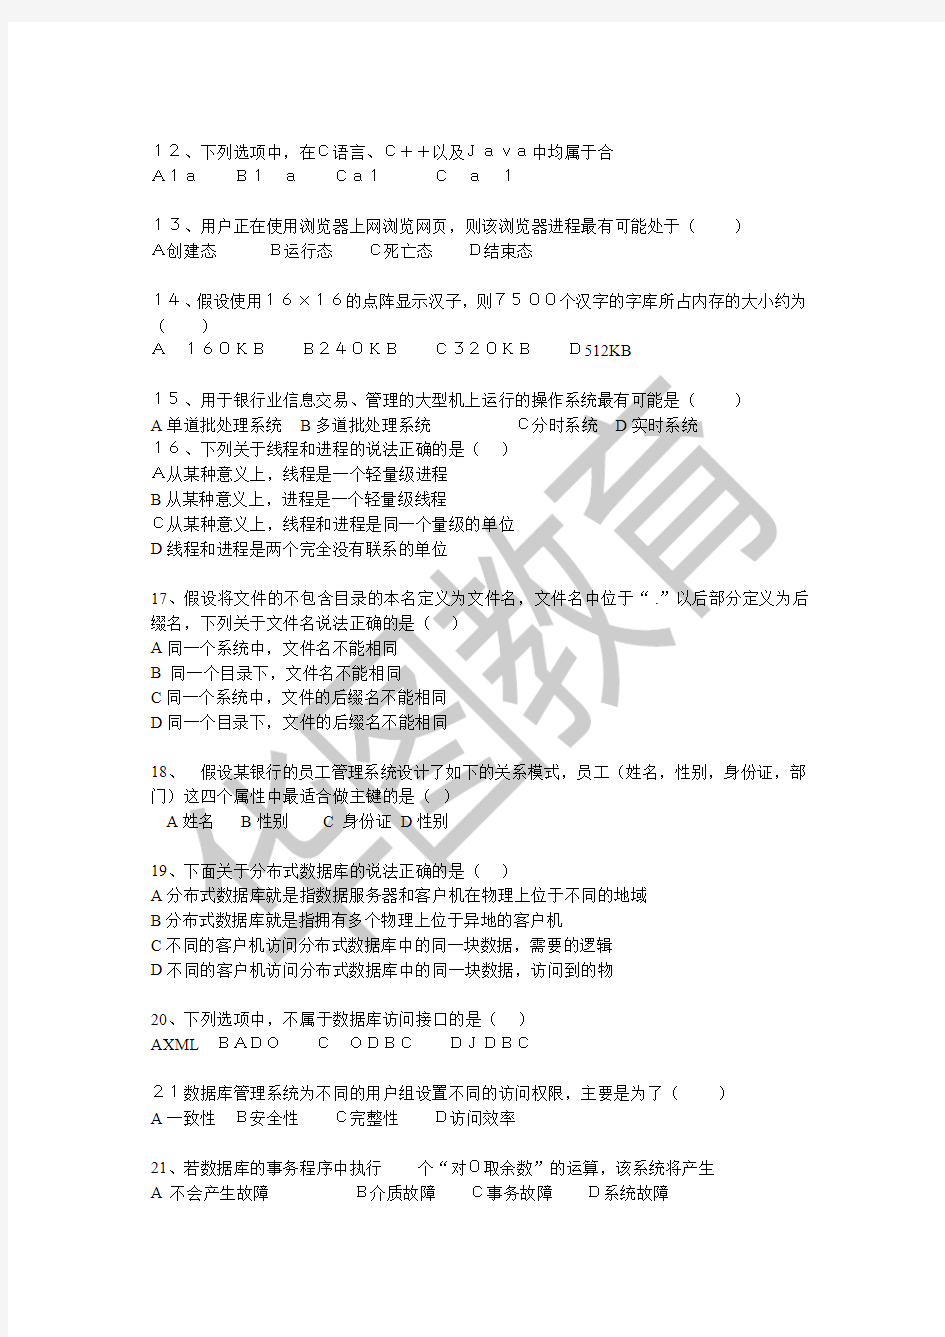 2015年湖南农信社招聘考试真题-计算机(全)